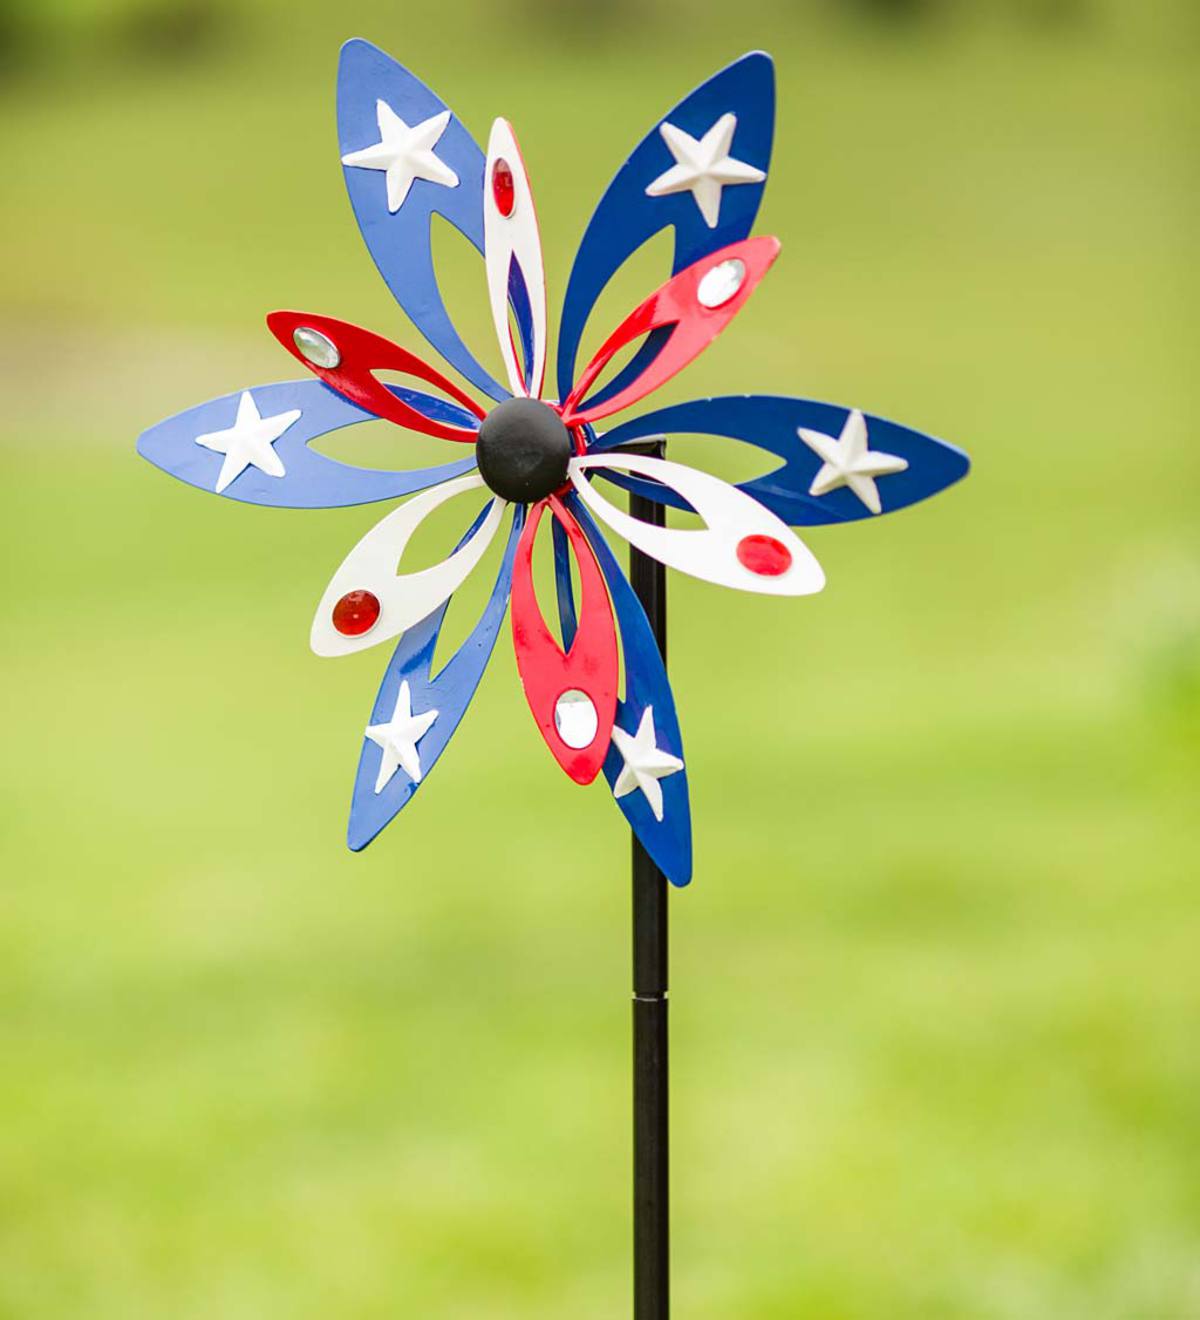 Patriotic Wind Spinner